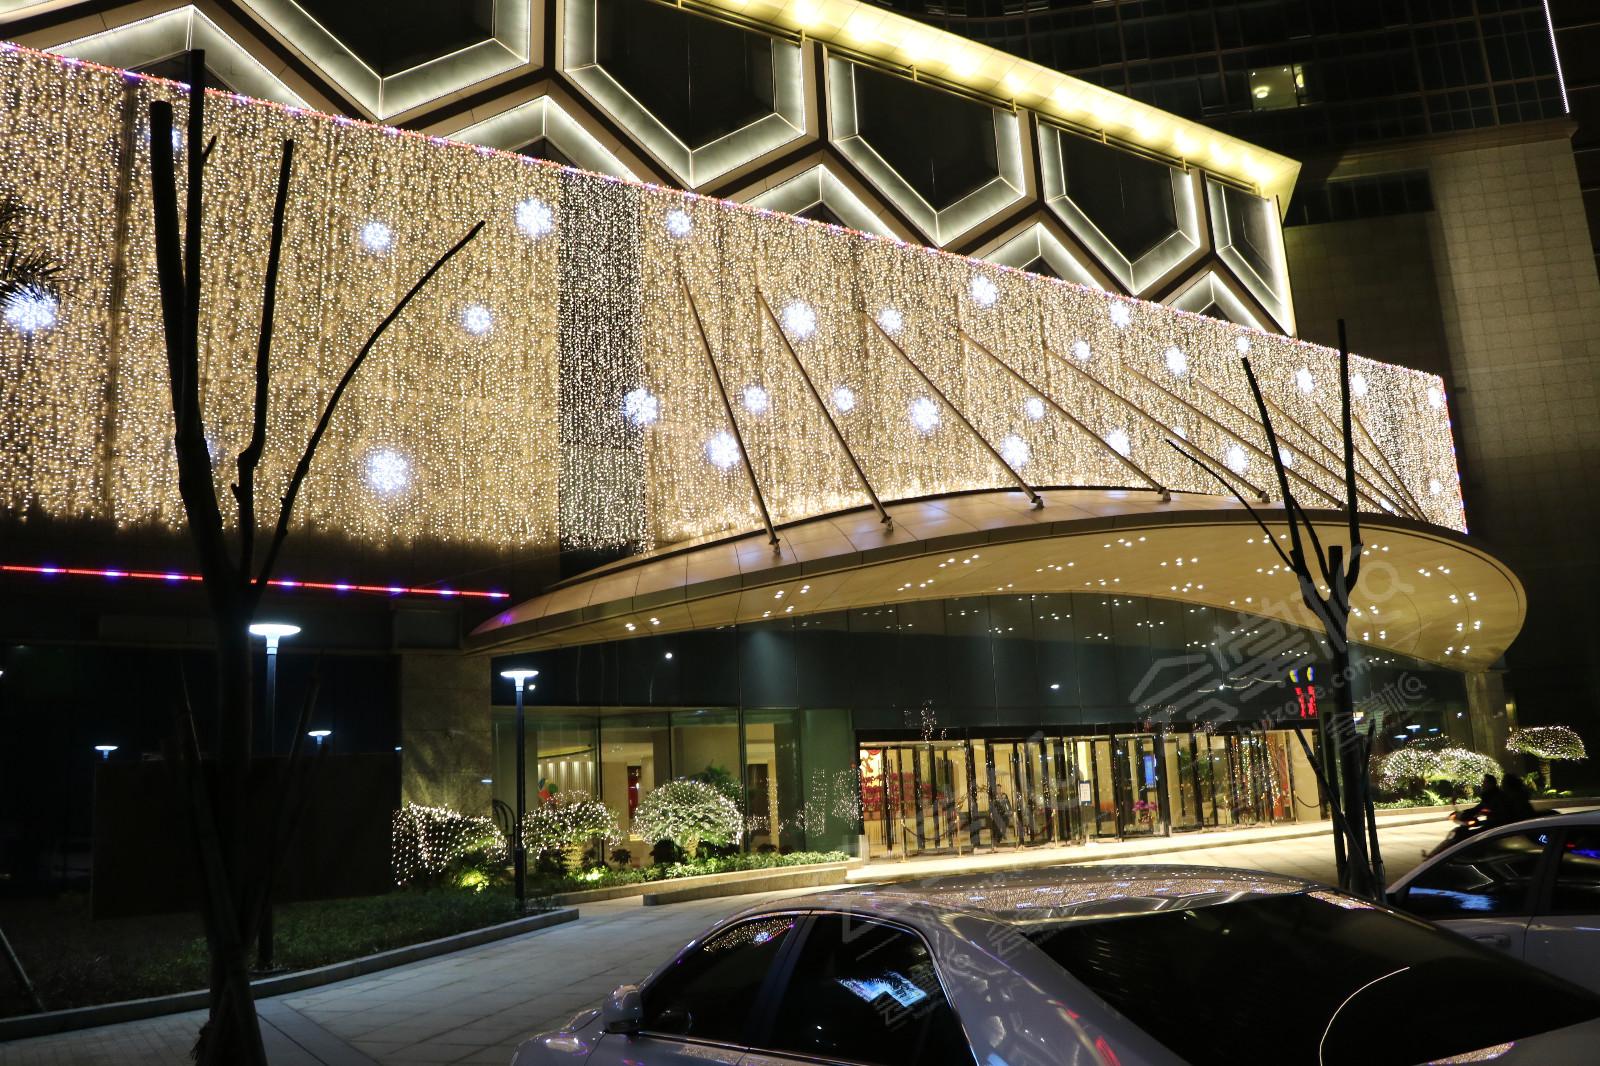 温岭国际大酒店几星级图片